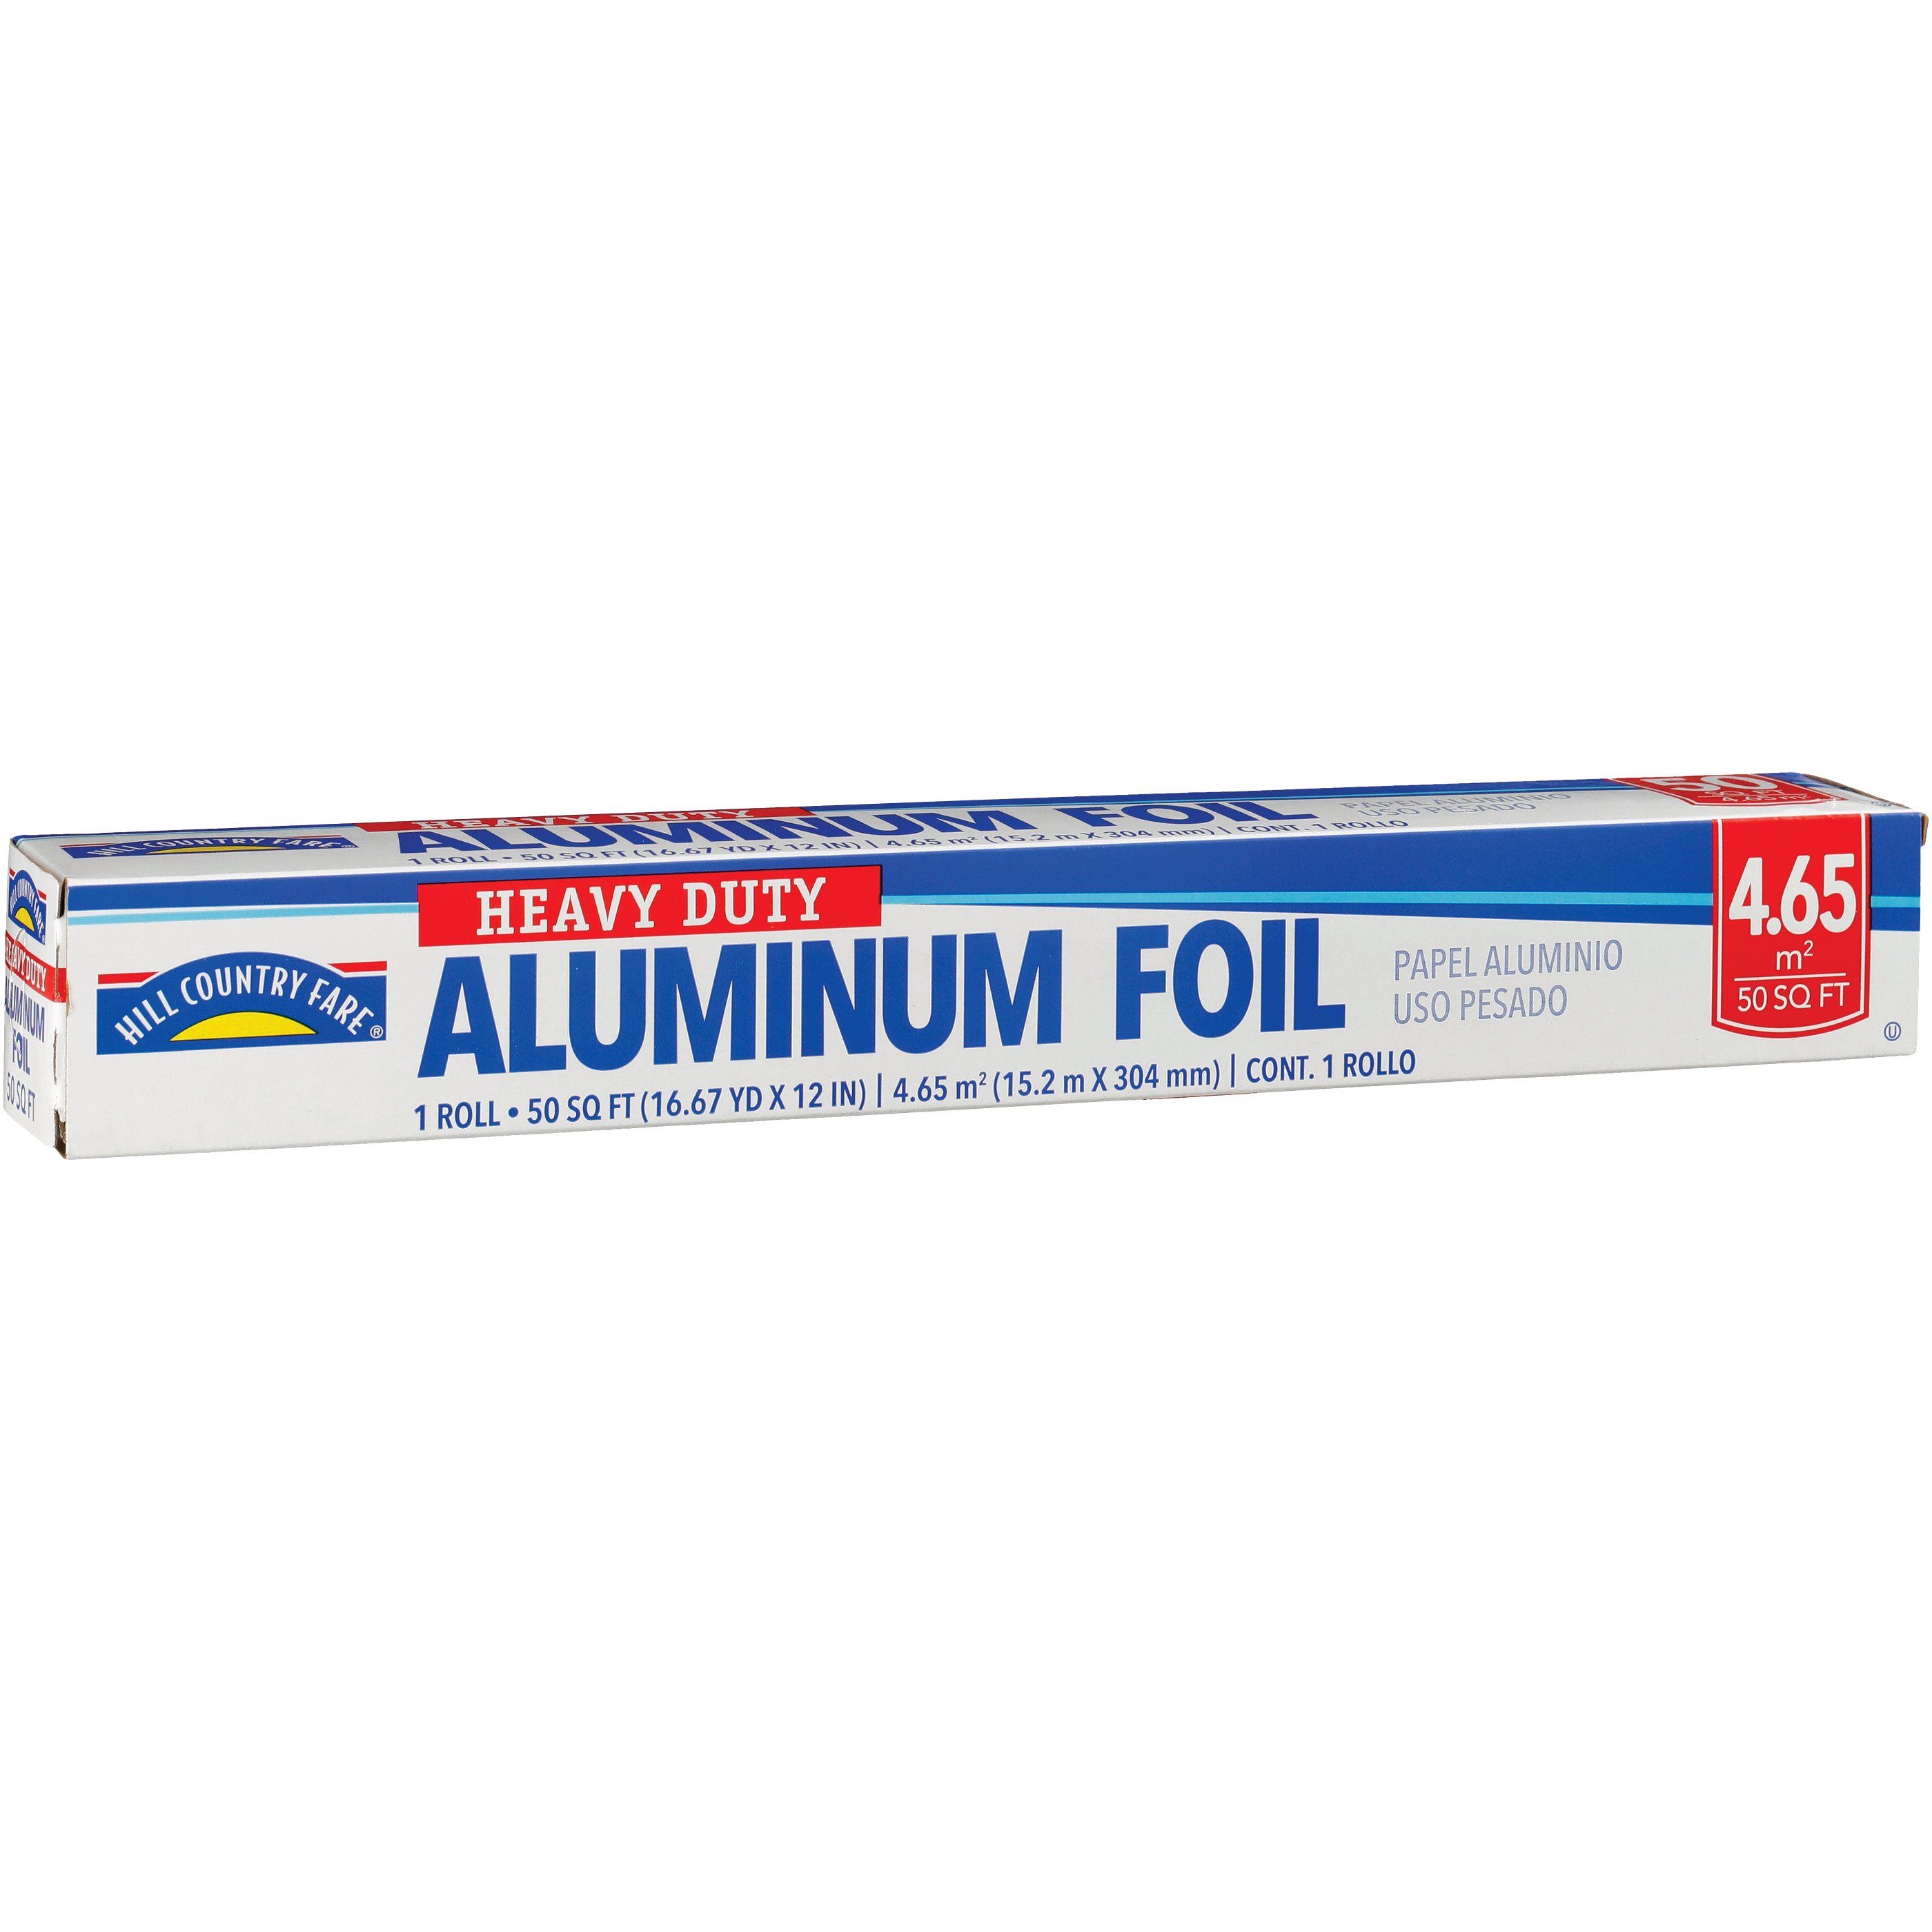 Hill Country Fare Precut Aluminum Foil Sheets